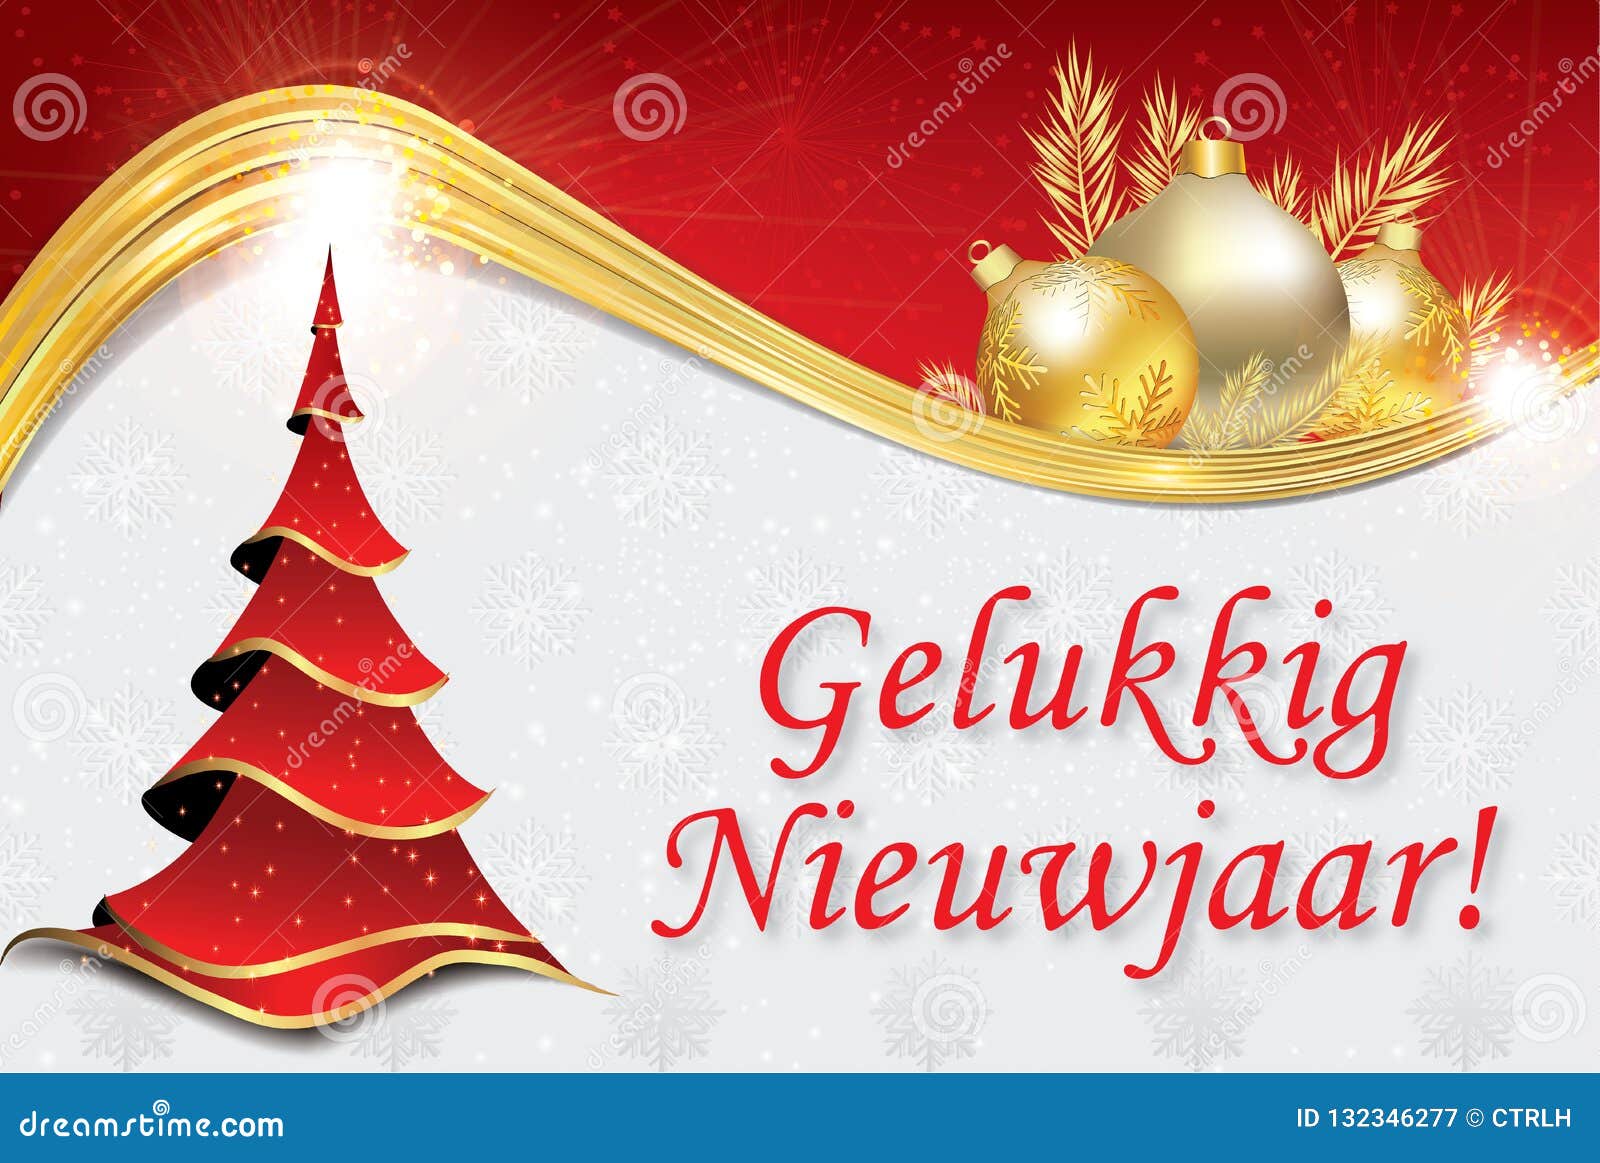 Auguri Di Buon Natale Olandese.Buon Anno Cartolina D Auguri Corporativa In Olandese Illustrazione Di Stock Illustrazione Di Norway Aziende 132346277